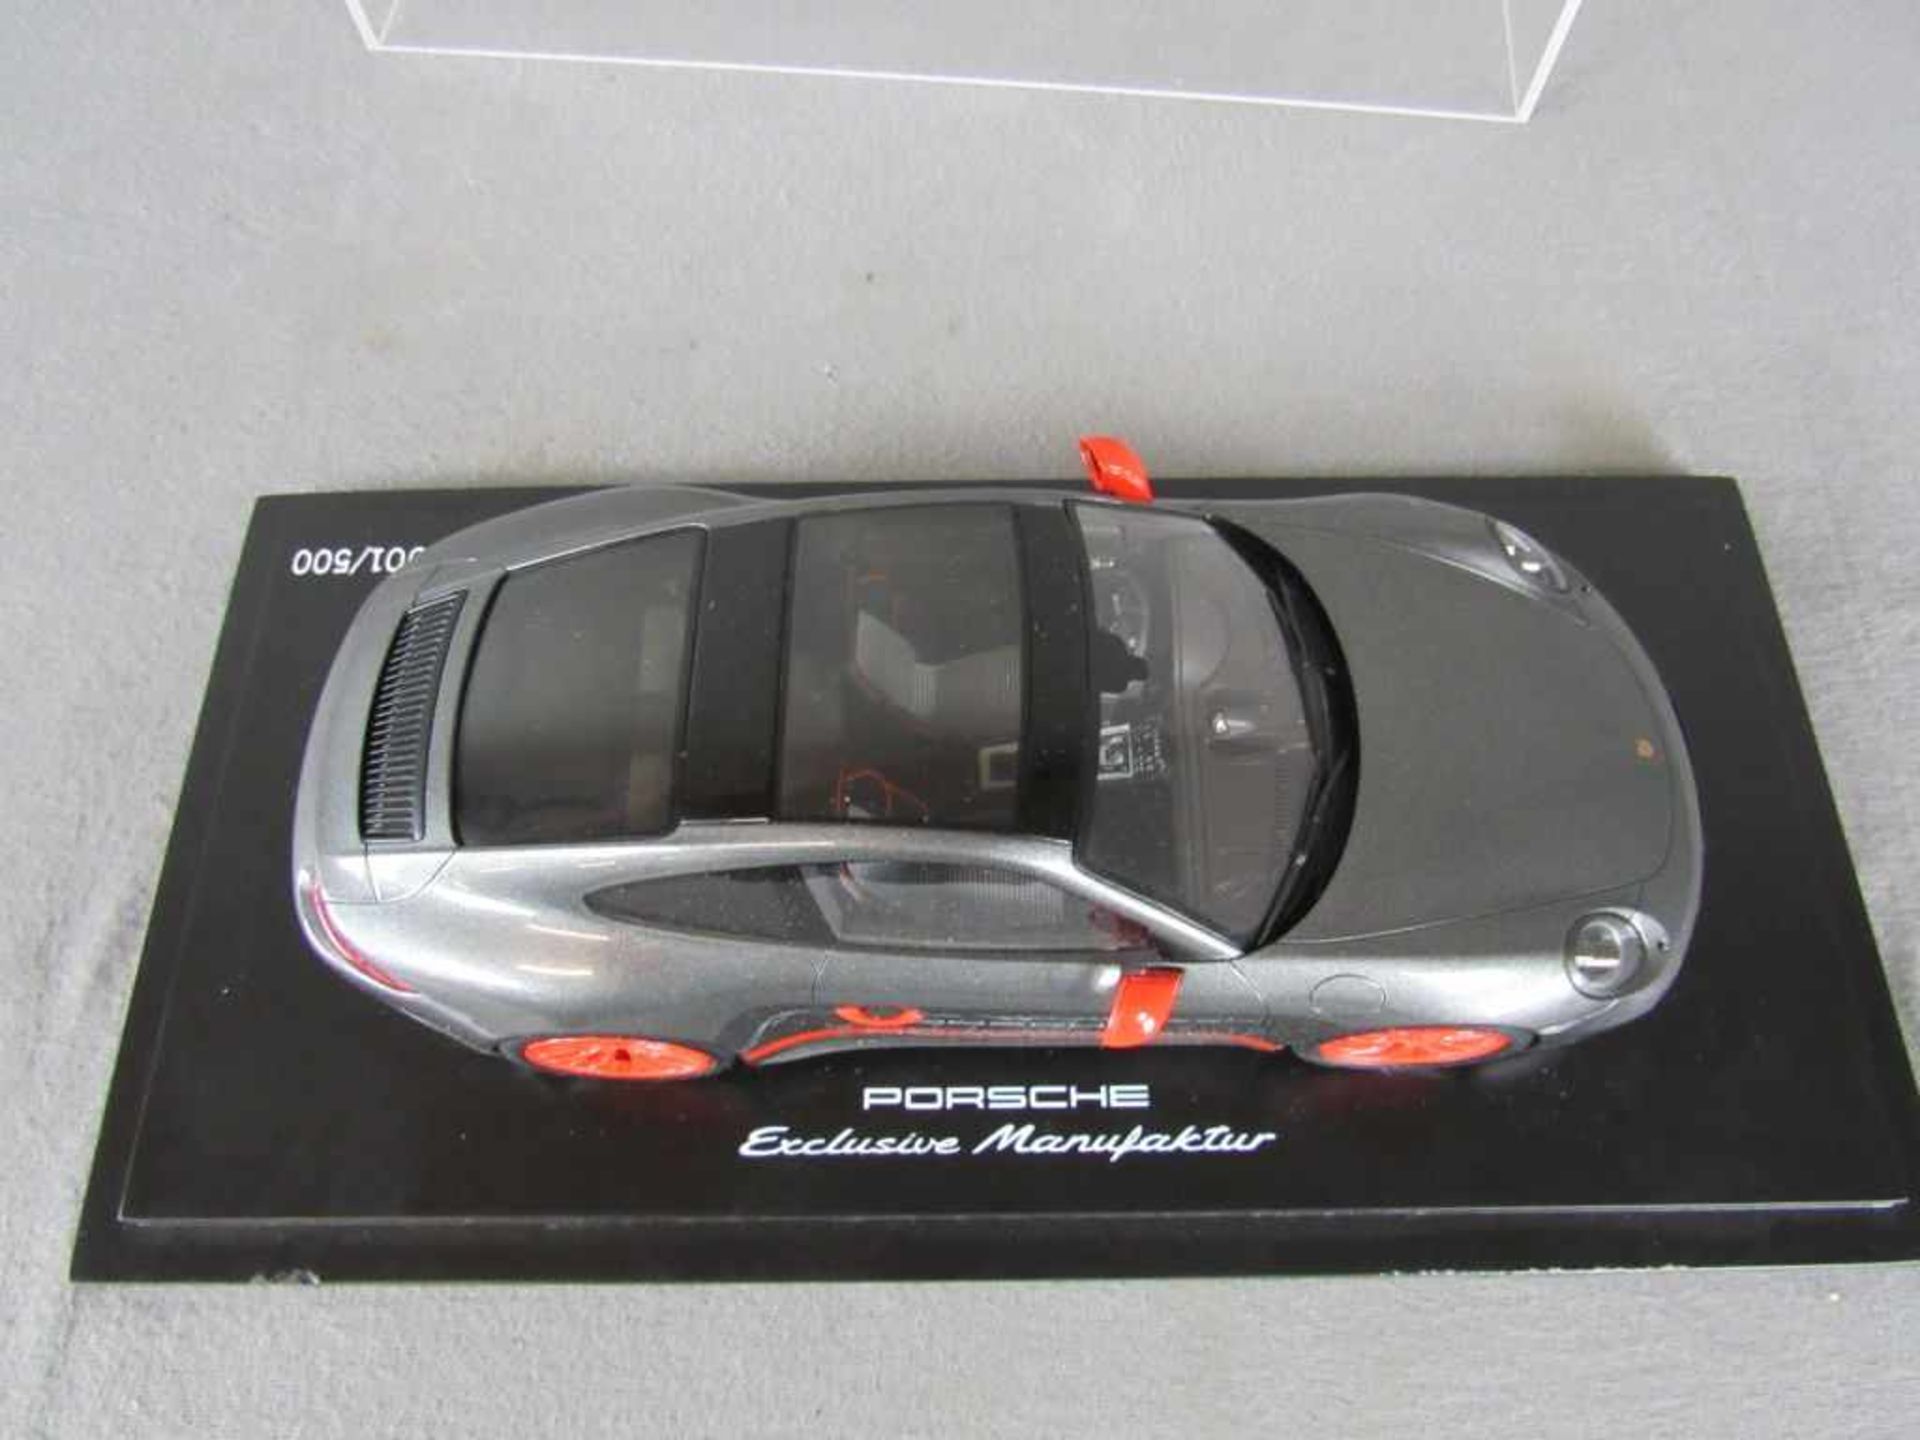 Modellauto Porsche Original Porsche Modell im Maßstab 1:18 in original Box unbespieltes - Bild 2 aus 6